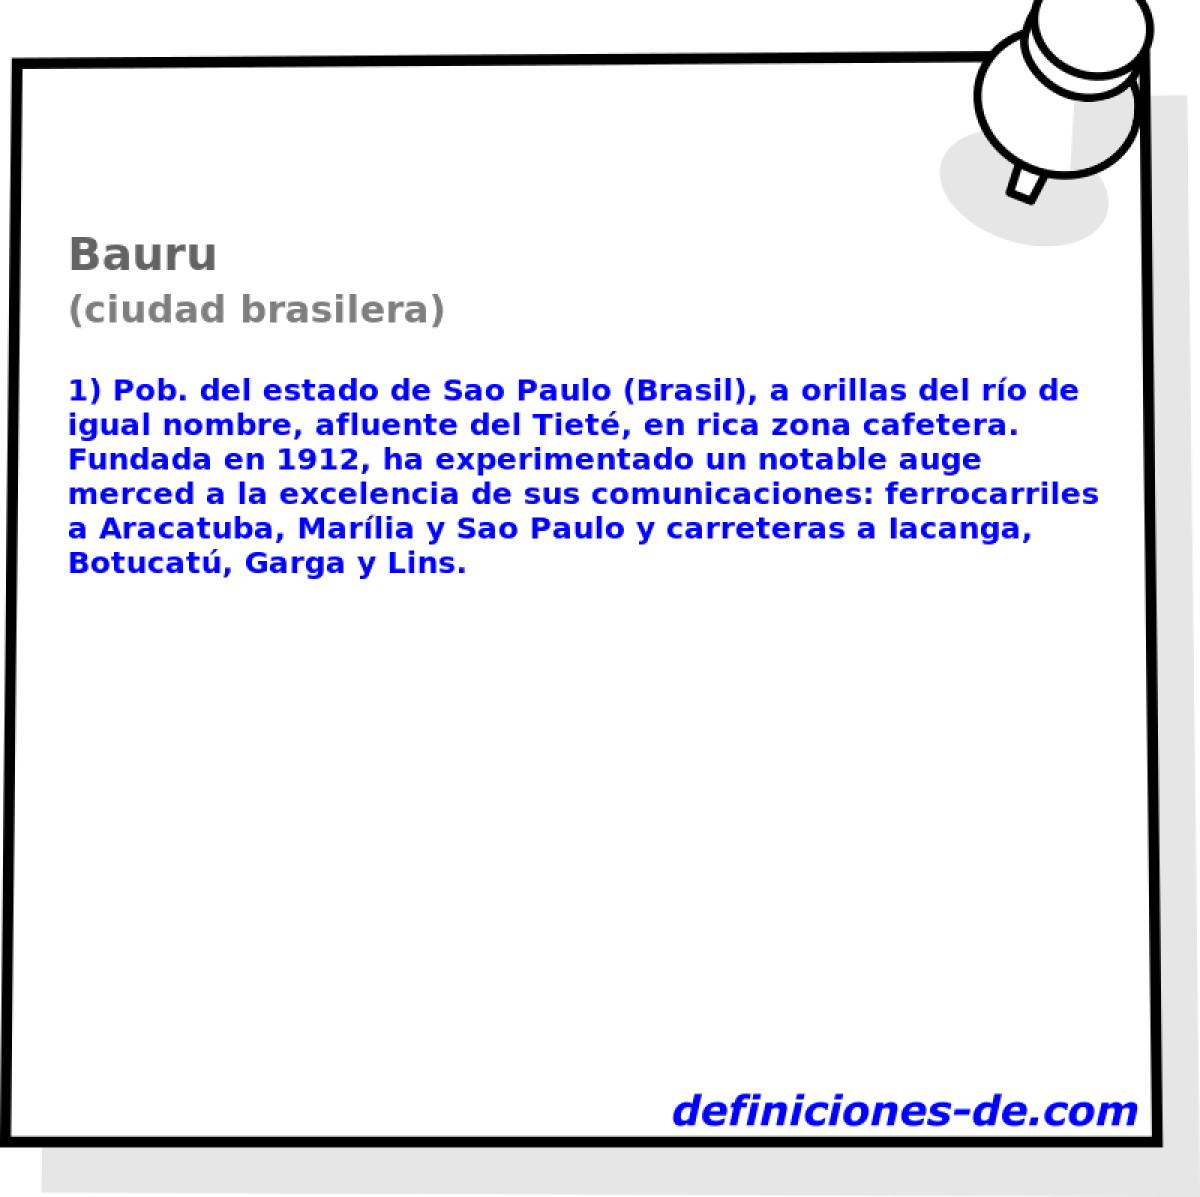 Bauru (ciudad brasilera)